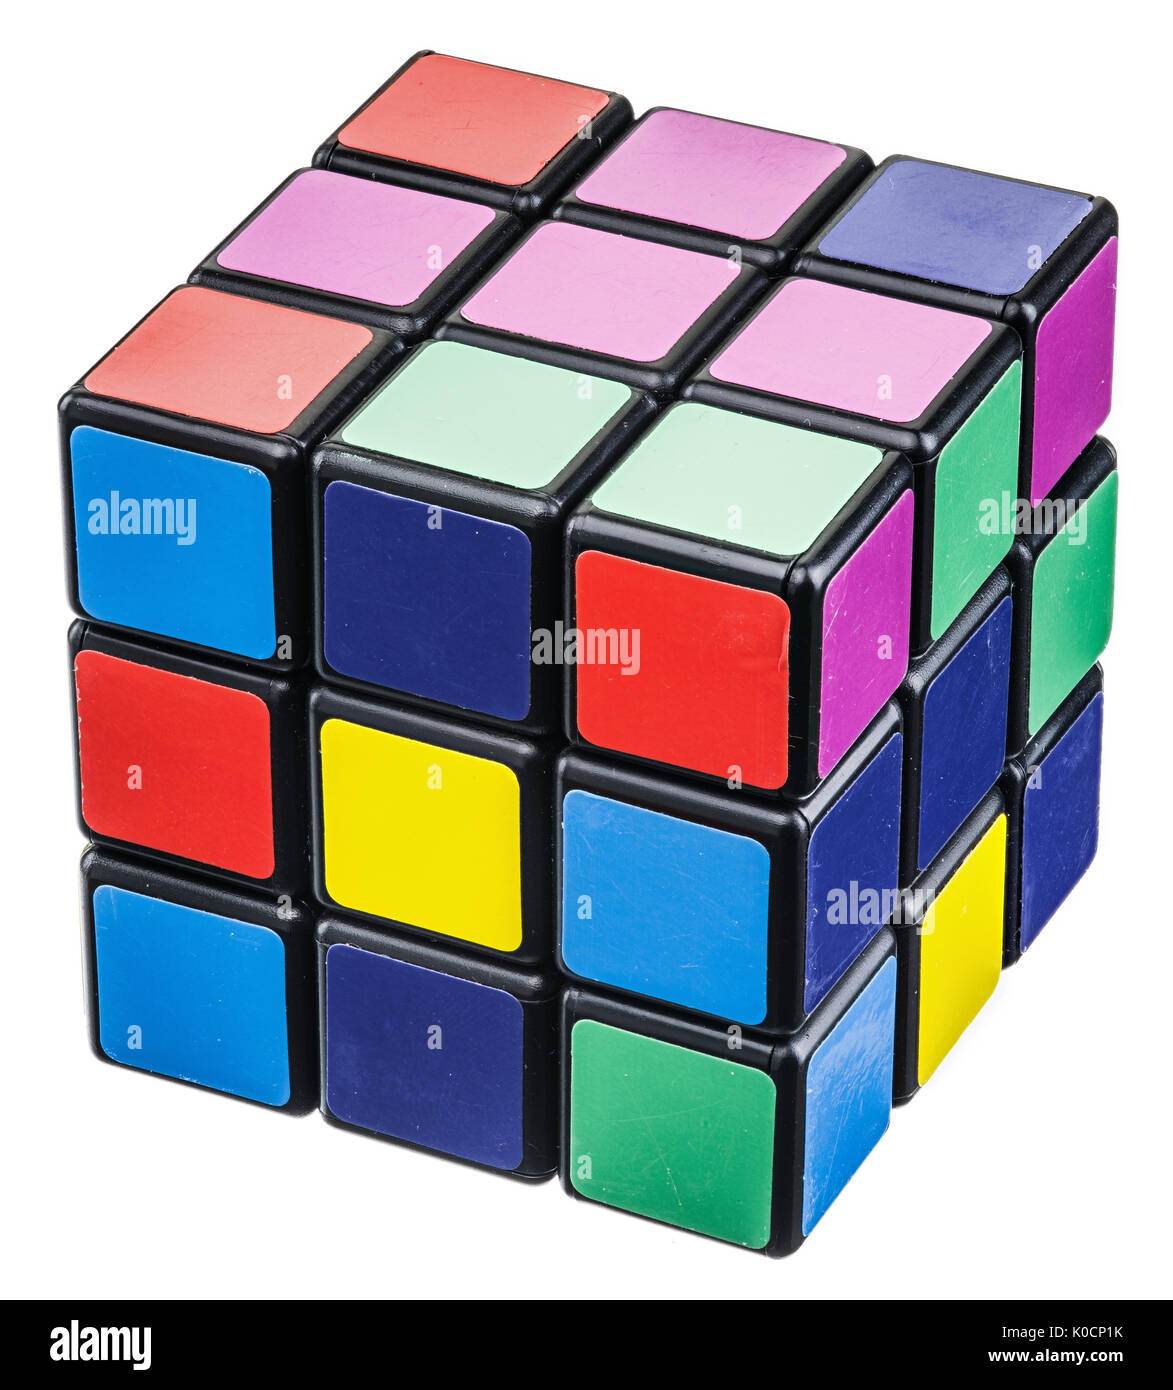 Rubik's cube cutout isolated on white background Stock Photo - Alamy